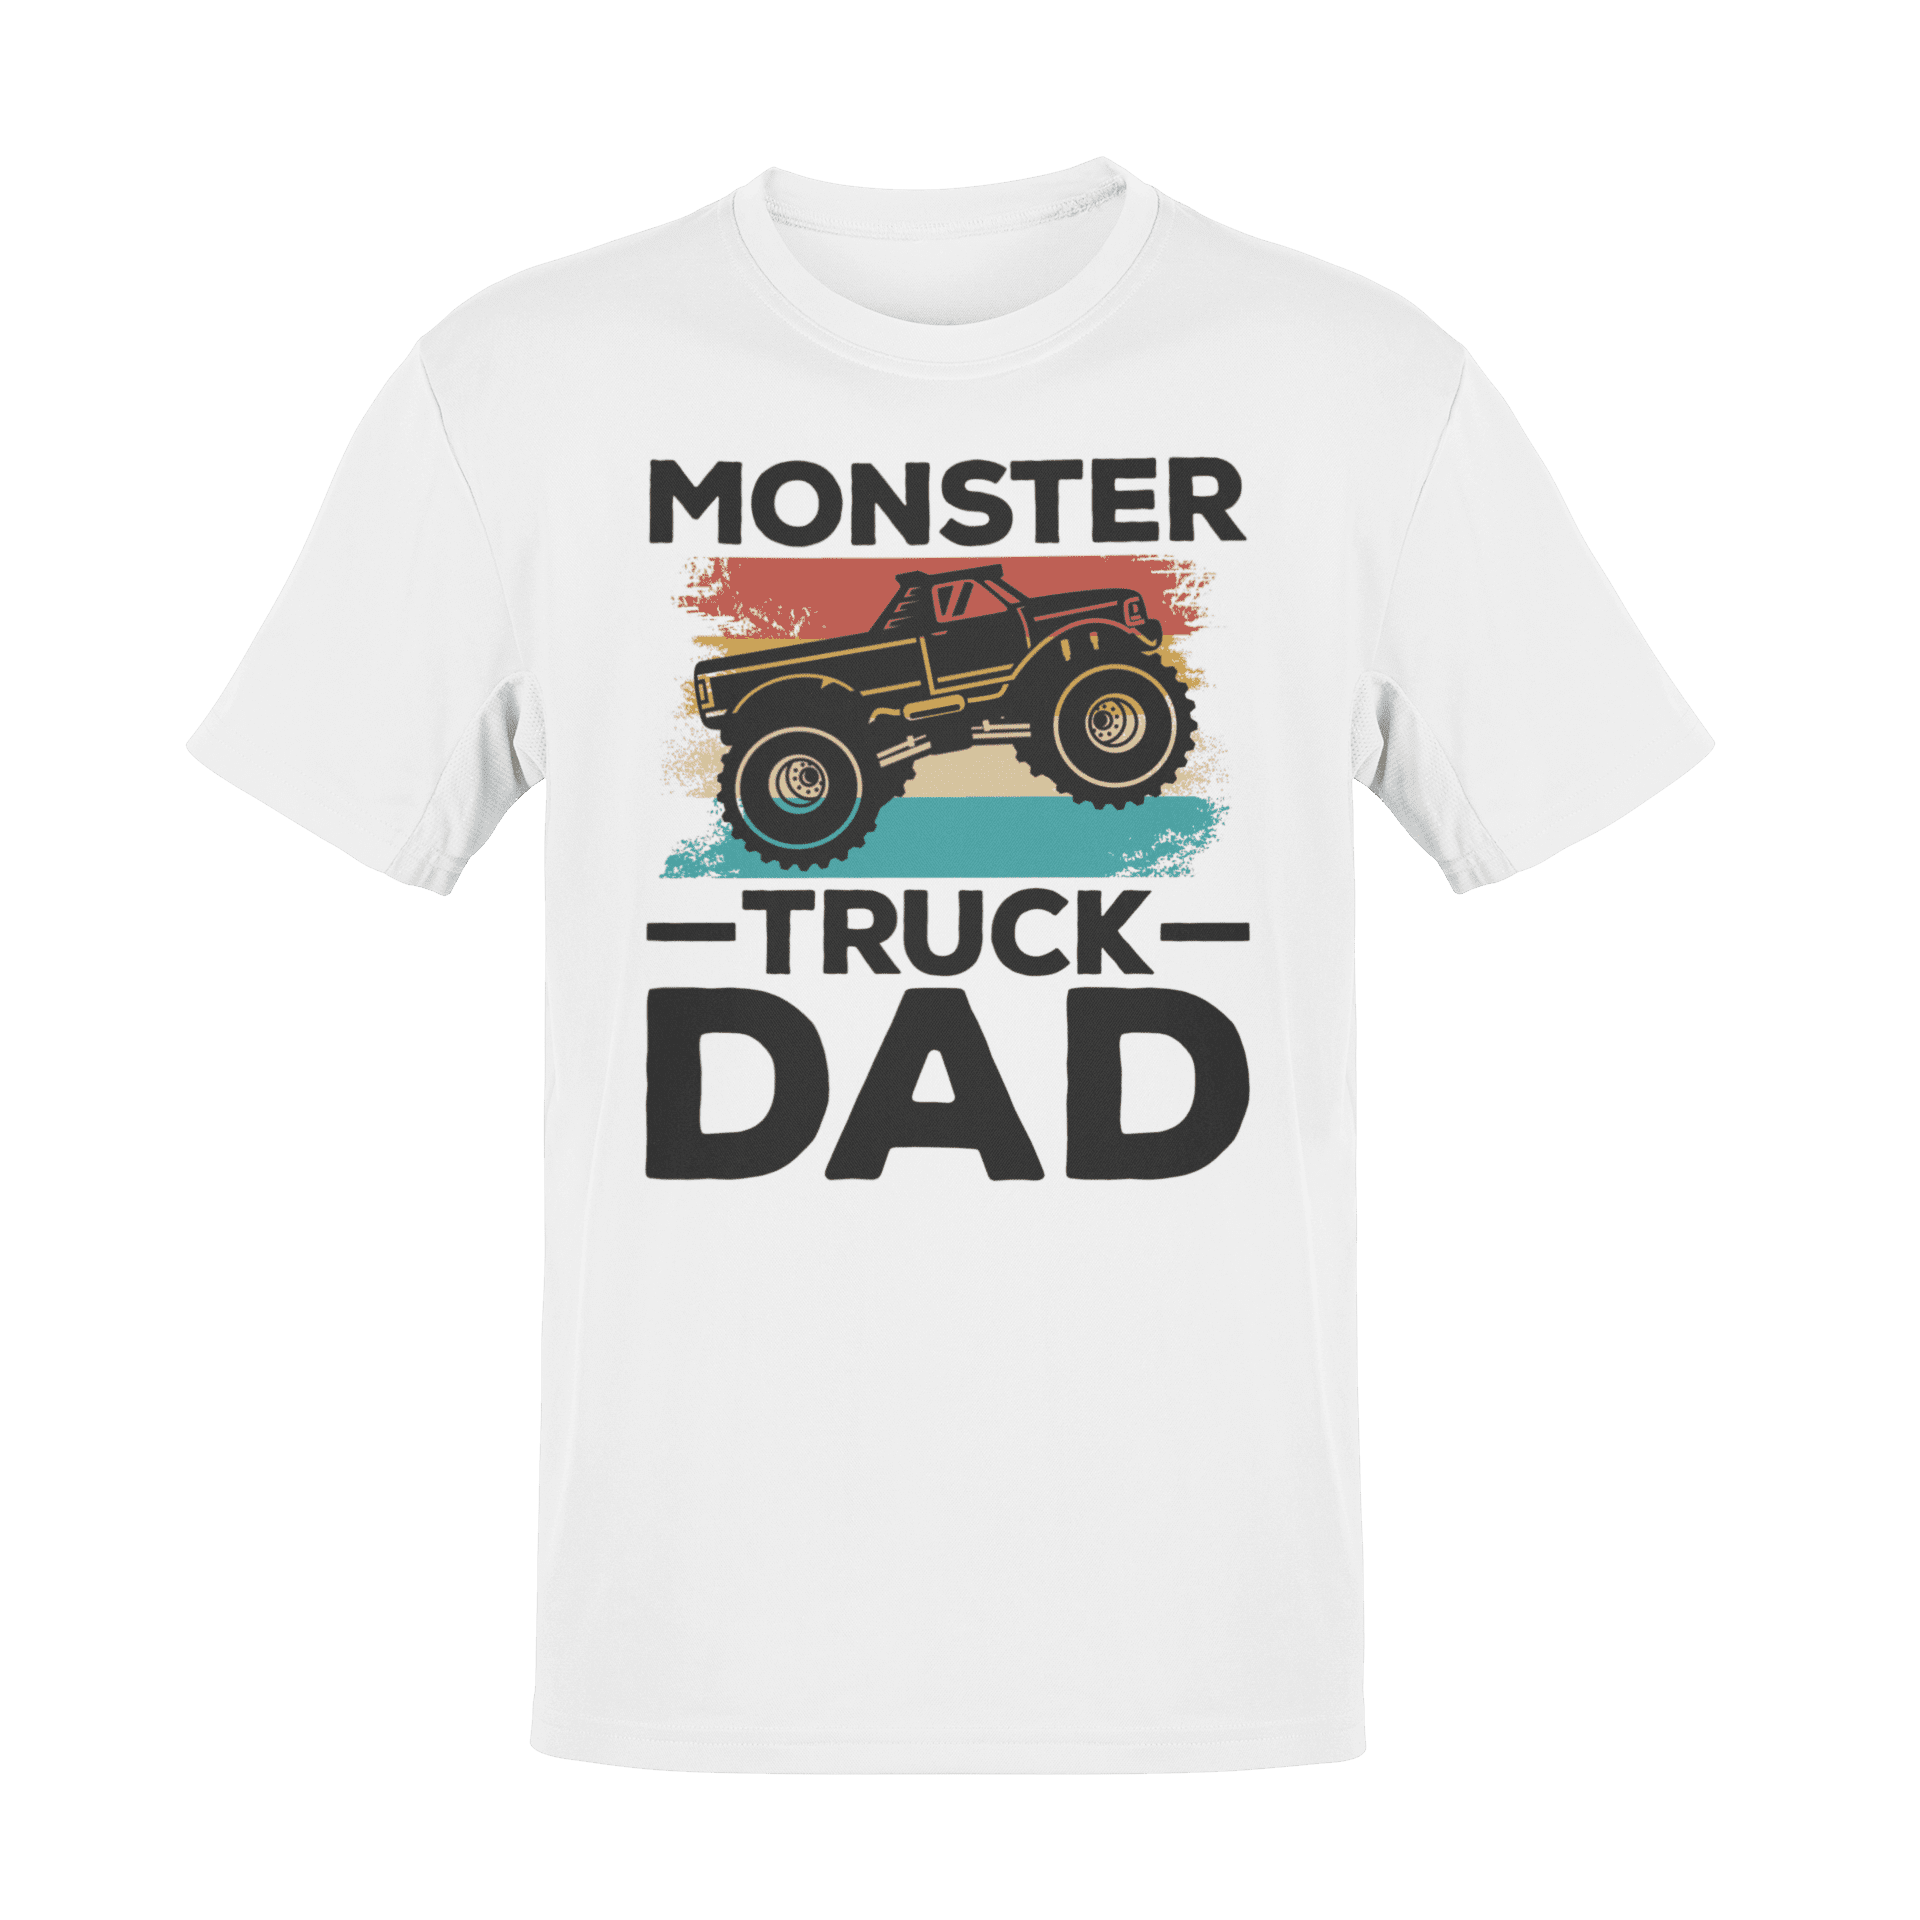 Truck dad